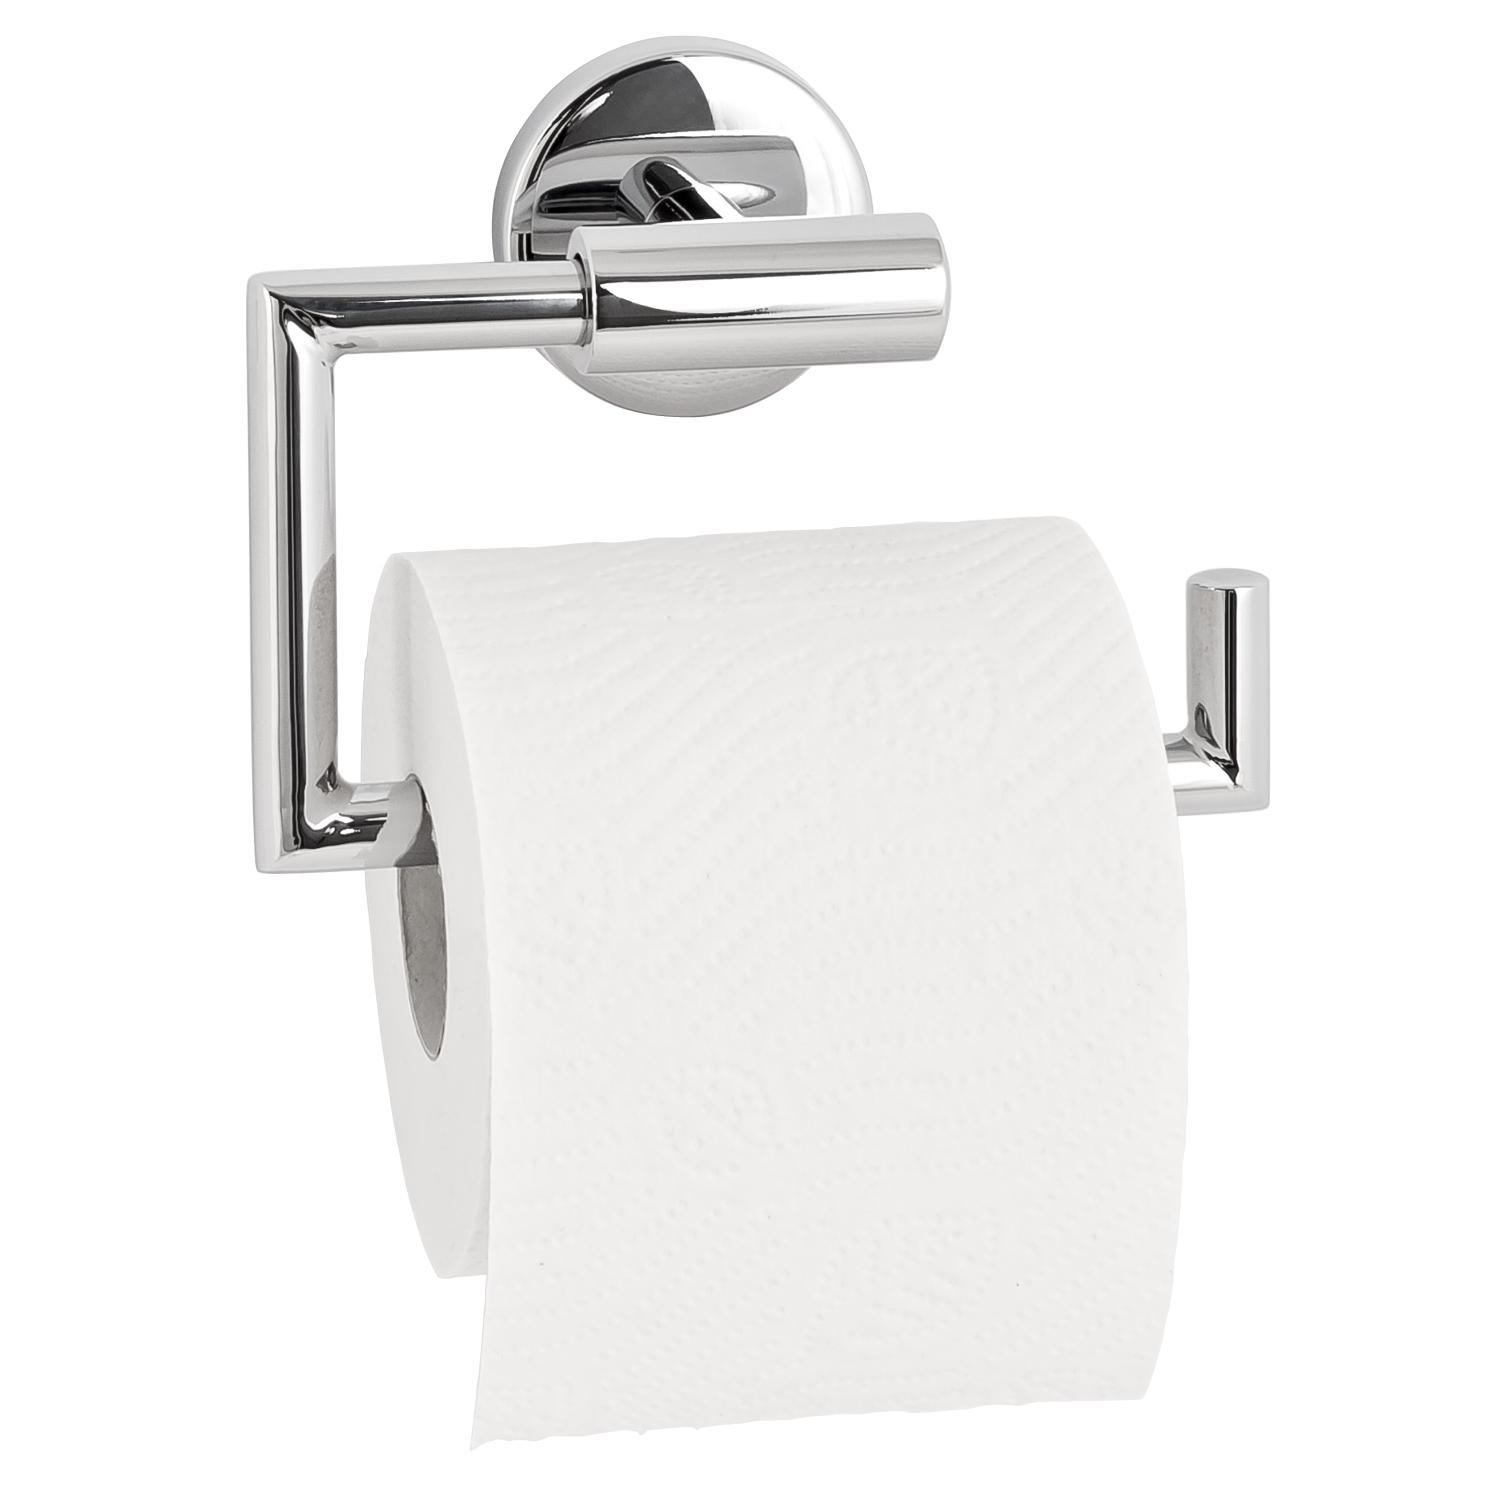 Bad-Serie LUCENTE Toilettenpapierhalter aus Edelstahl verchromt hochglänzend